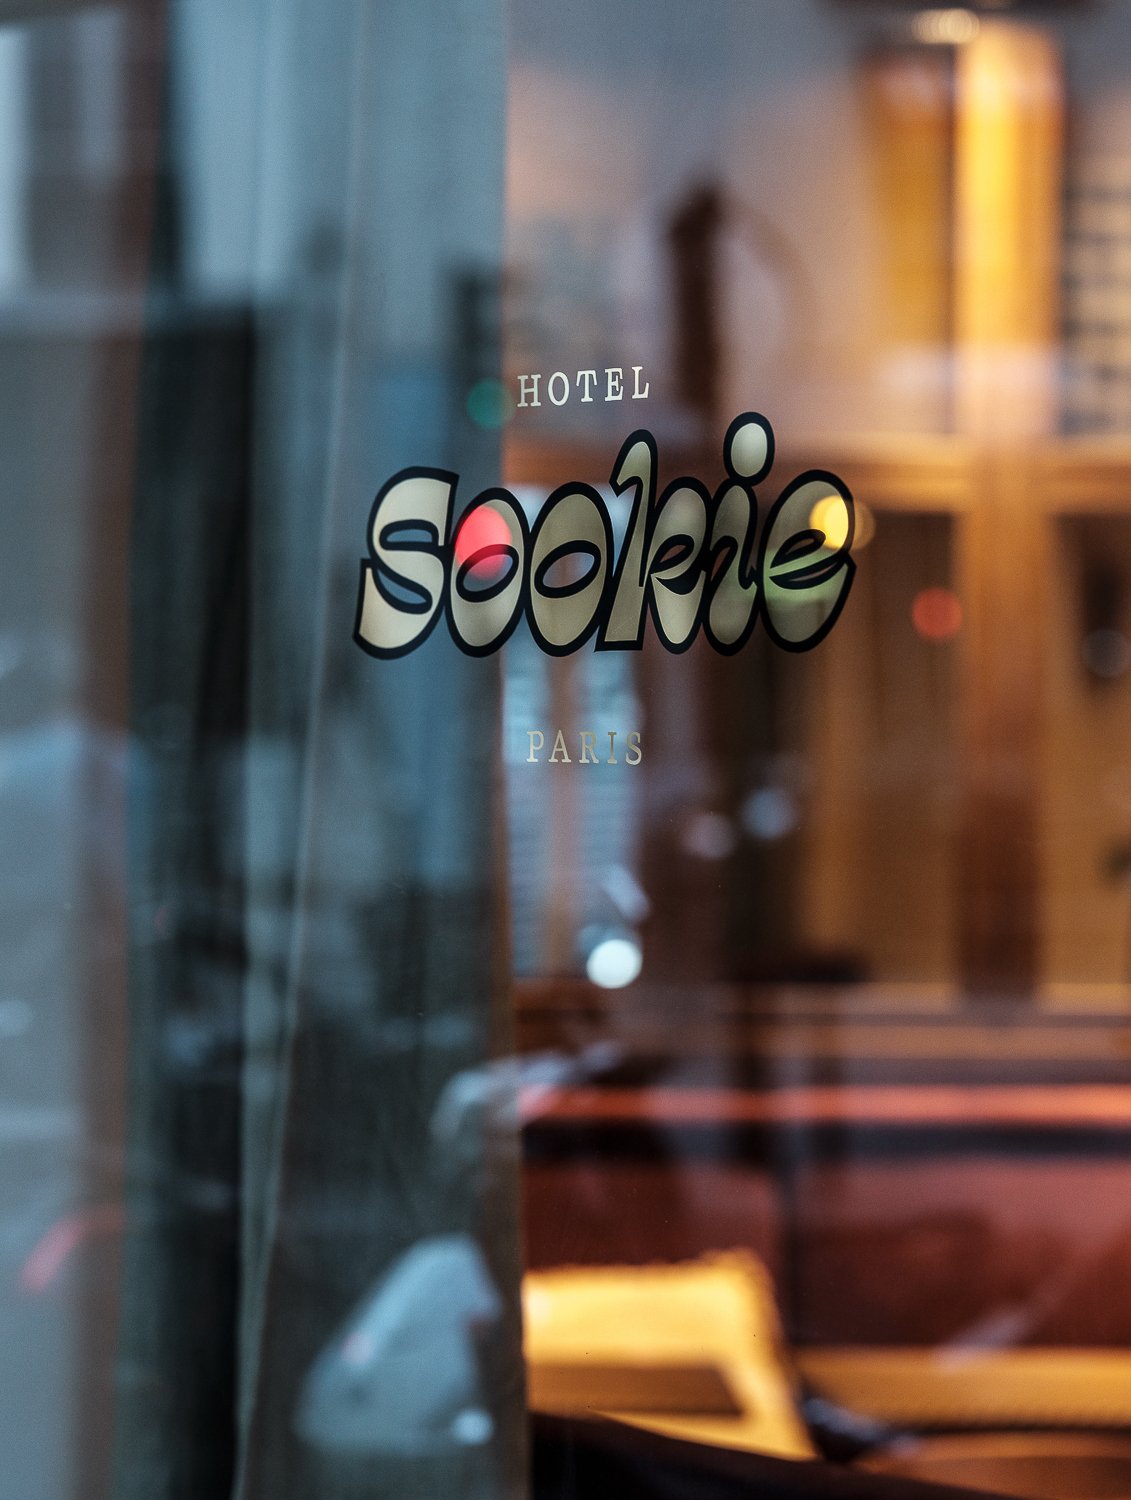 Hotel Sookie